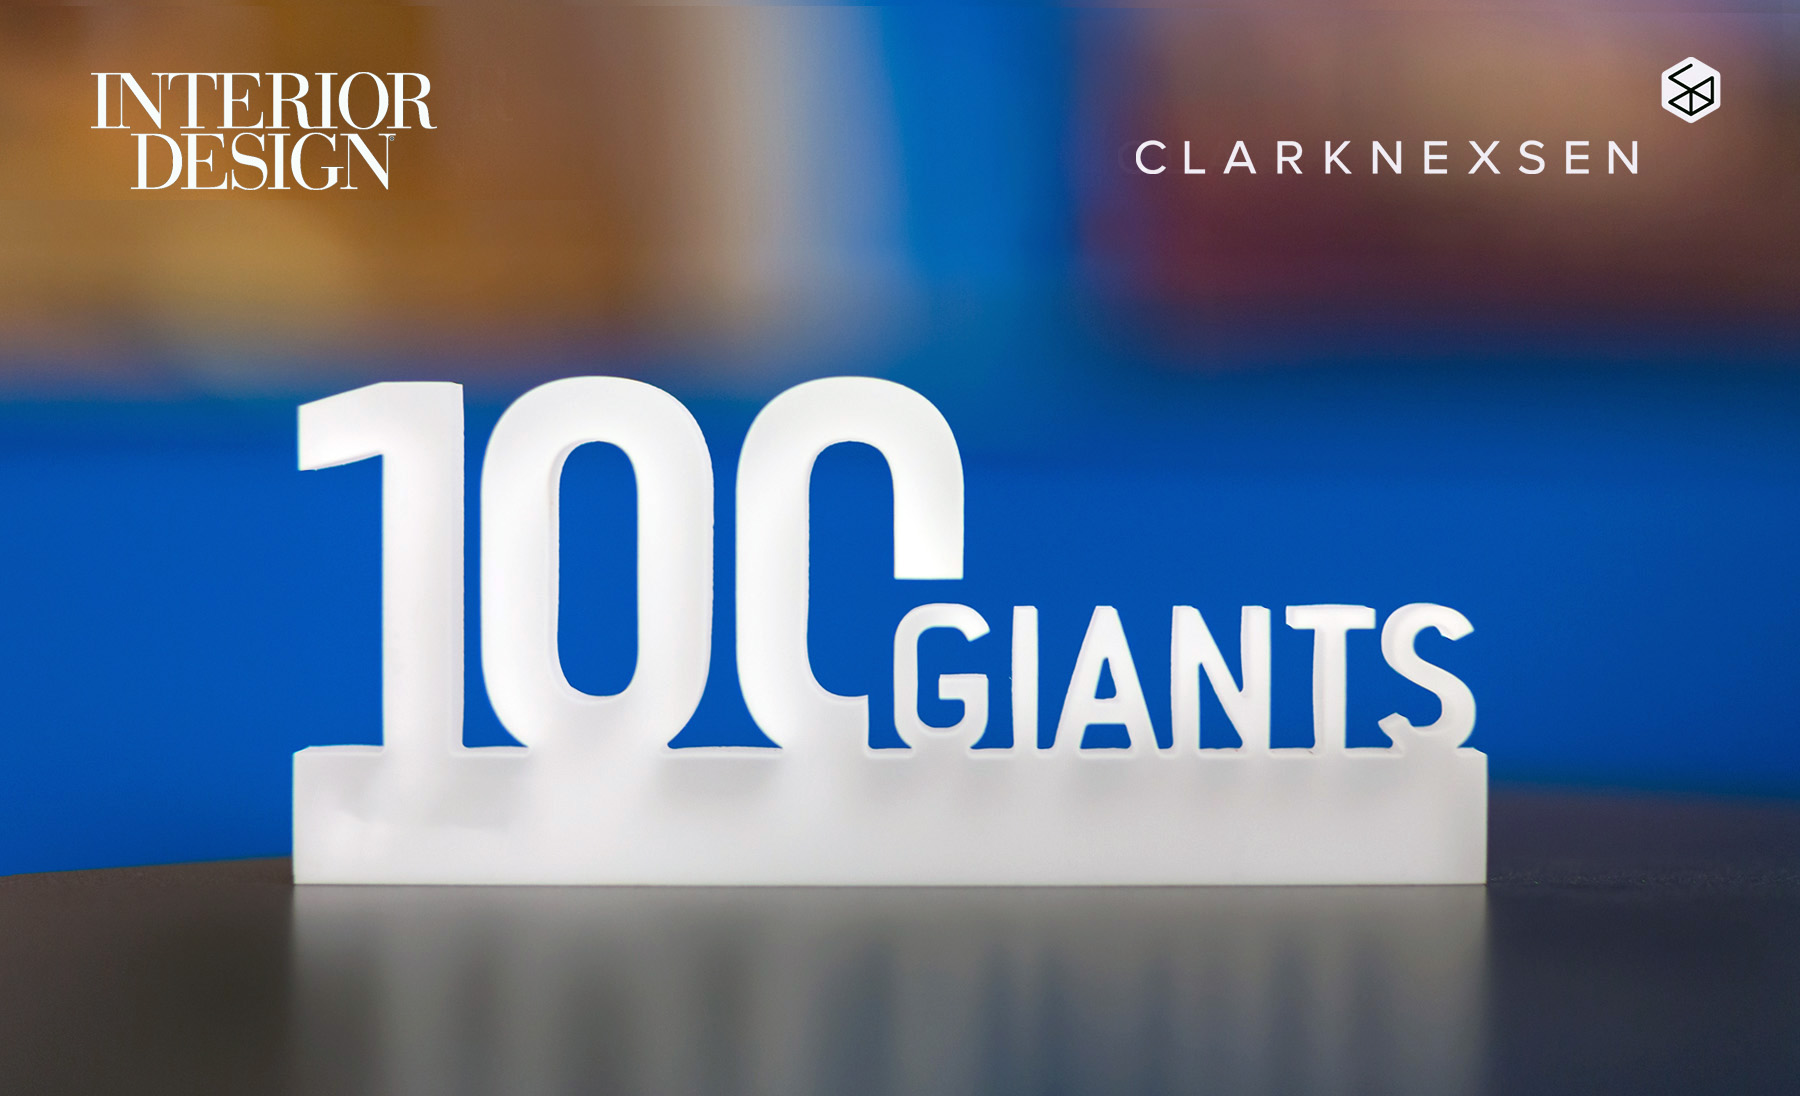 Clark Nexsen ranked #74 among Interior Design's 2018 Top Giants